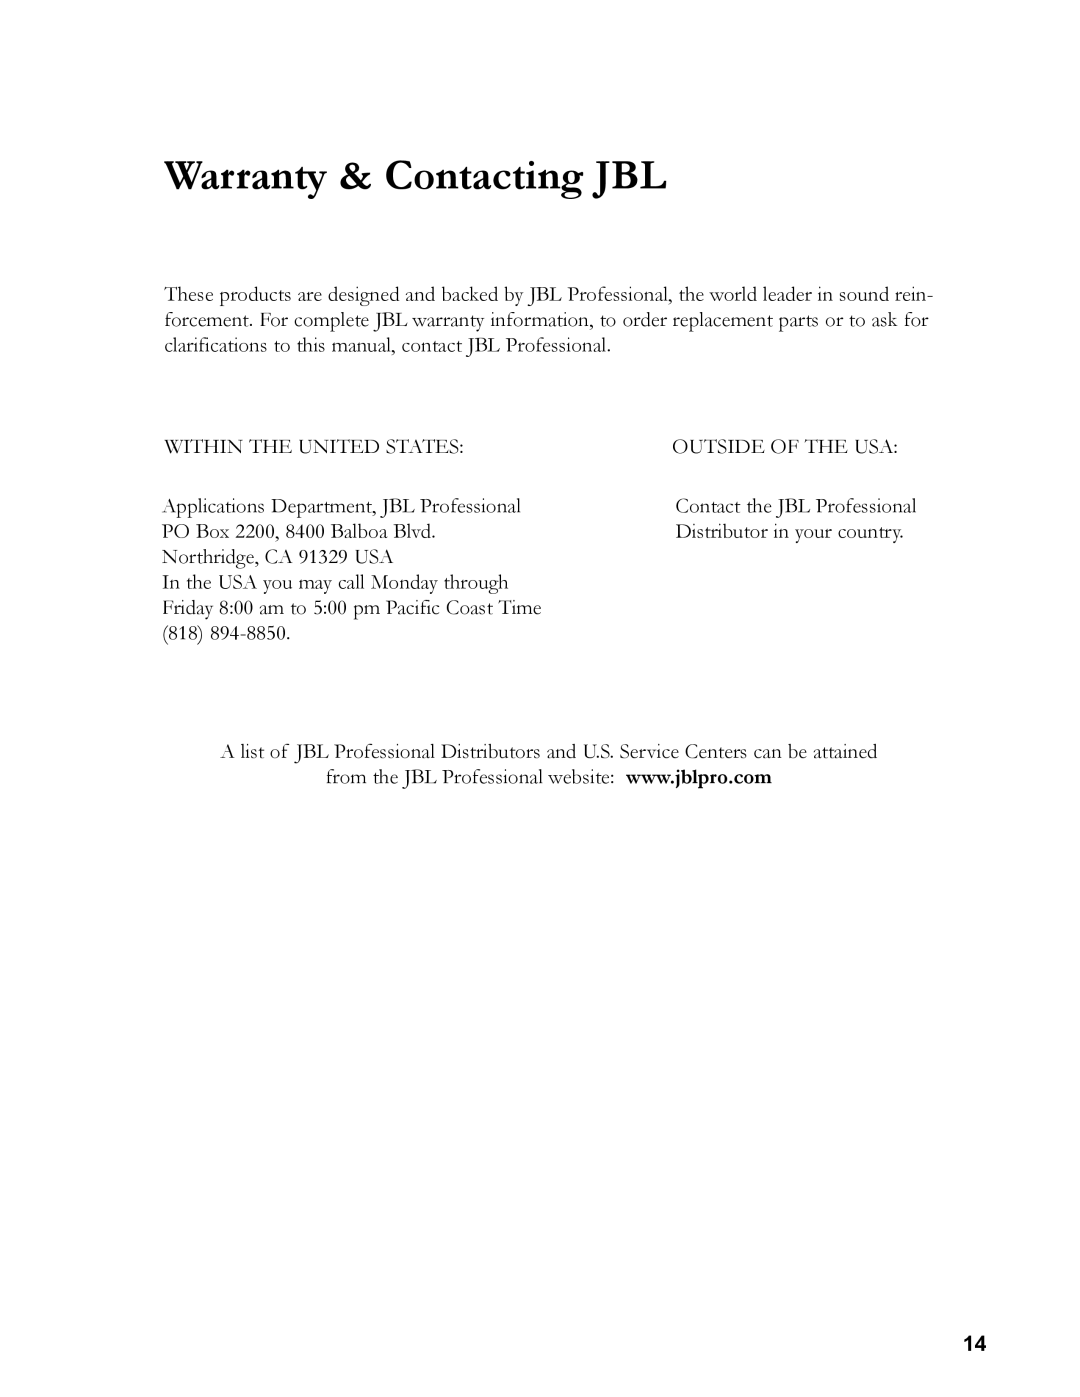 JBL 24C/CT owner manual Warranty & Contacting JBL 